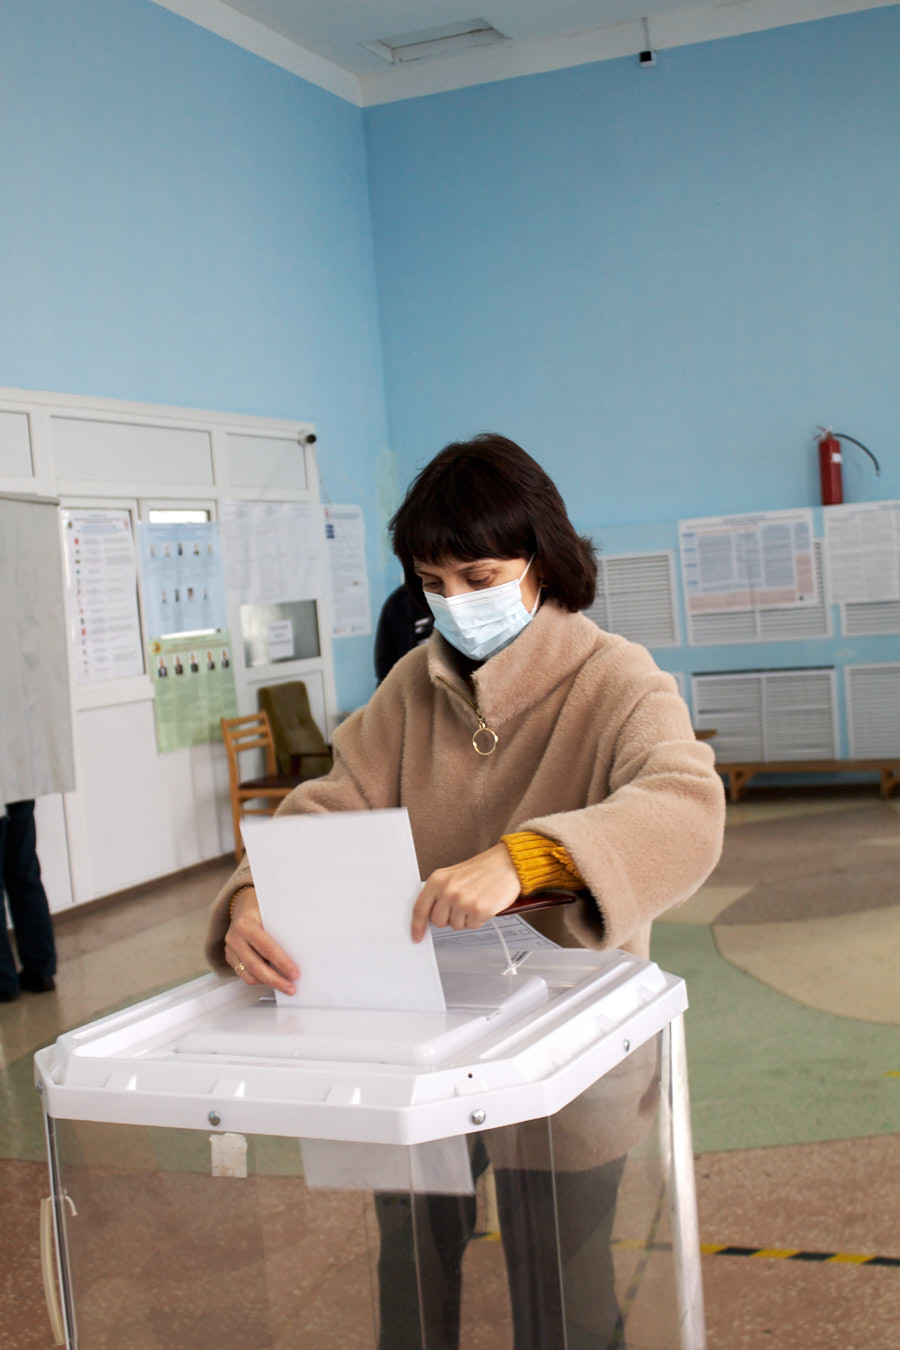 В Камешкирском районе стартовали выборы